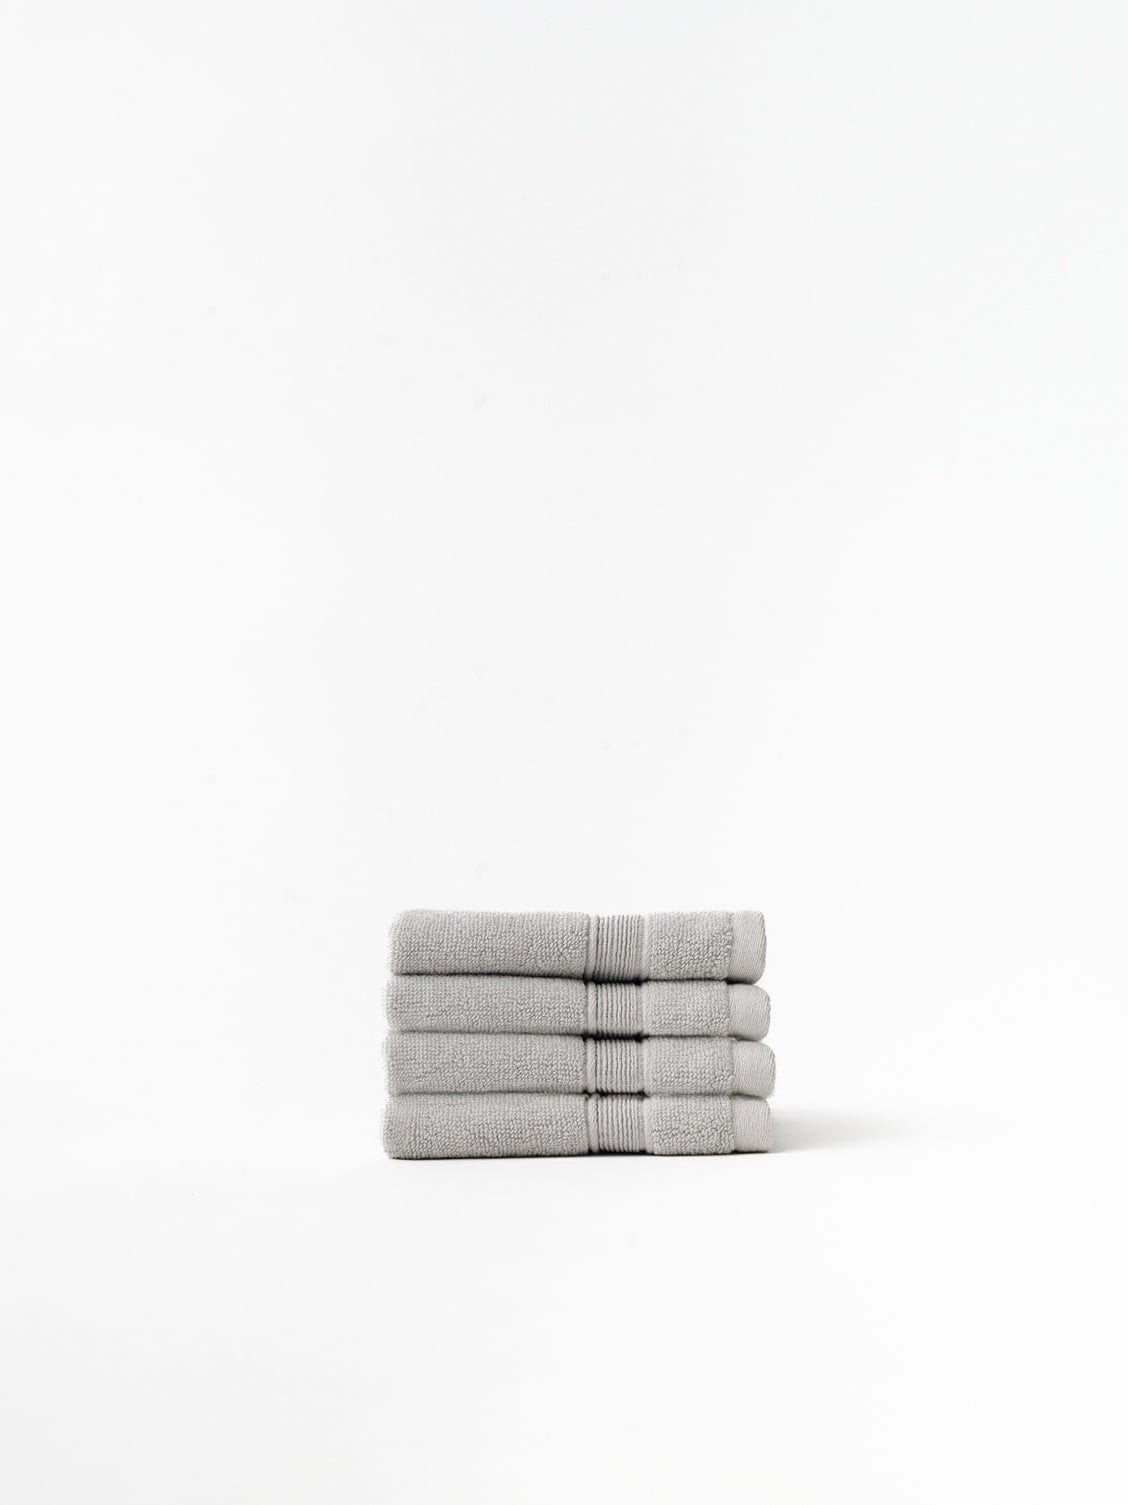 Light grey washcloths folded with white background 